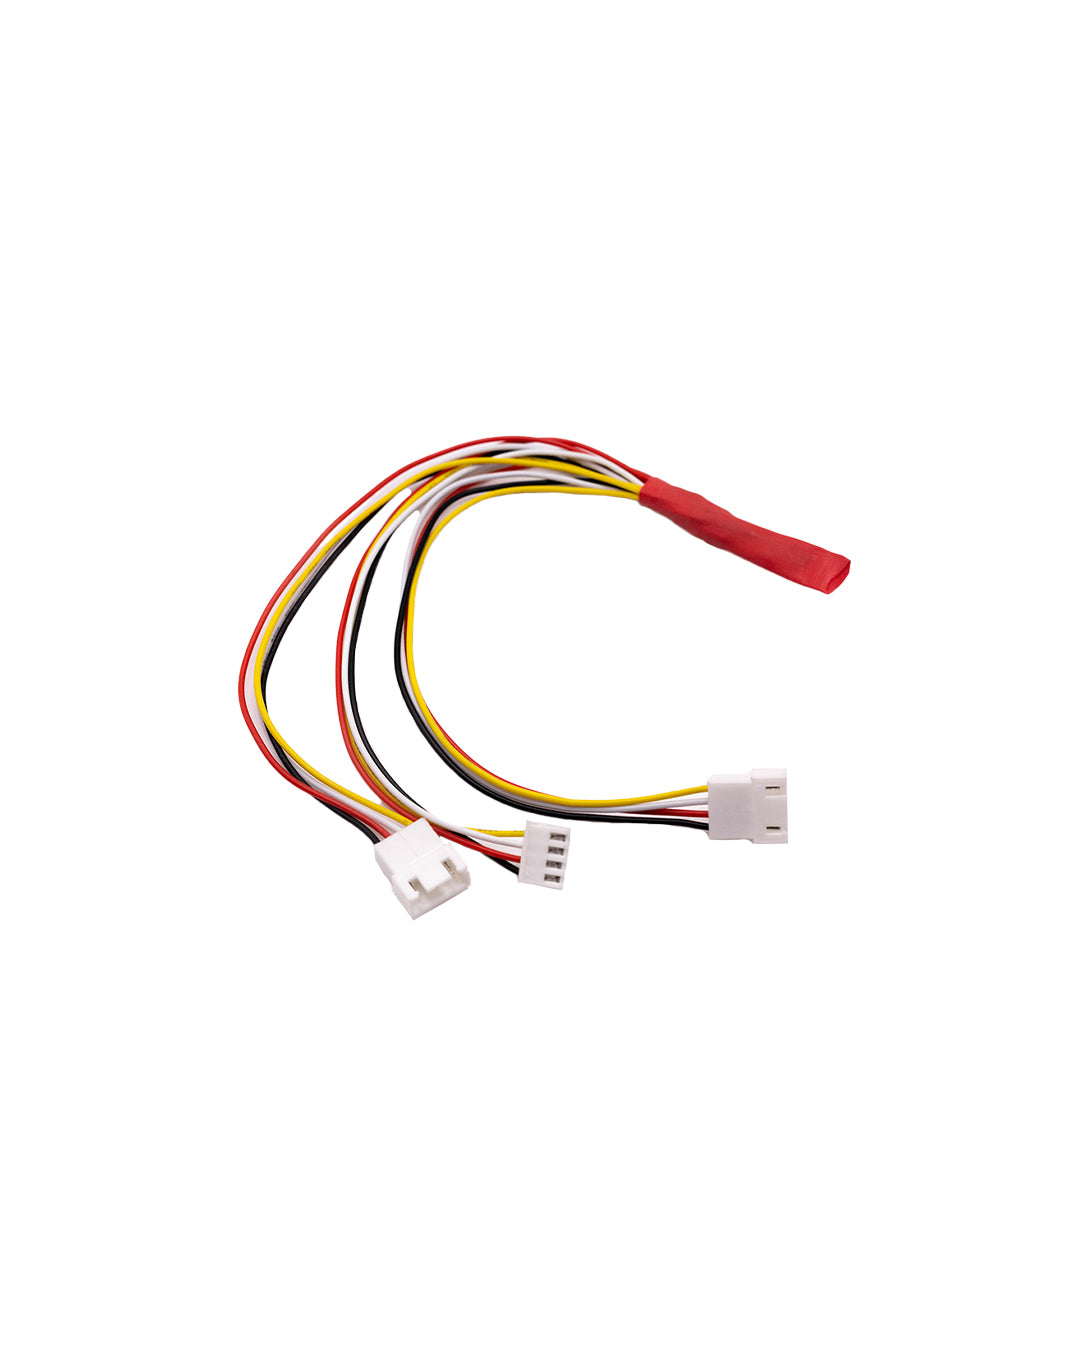 CP800 parts - Outlet Sensor Split Cable - CPE03 *Pre-Order